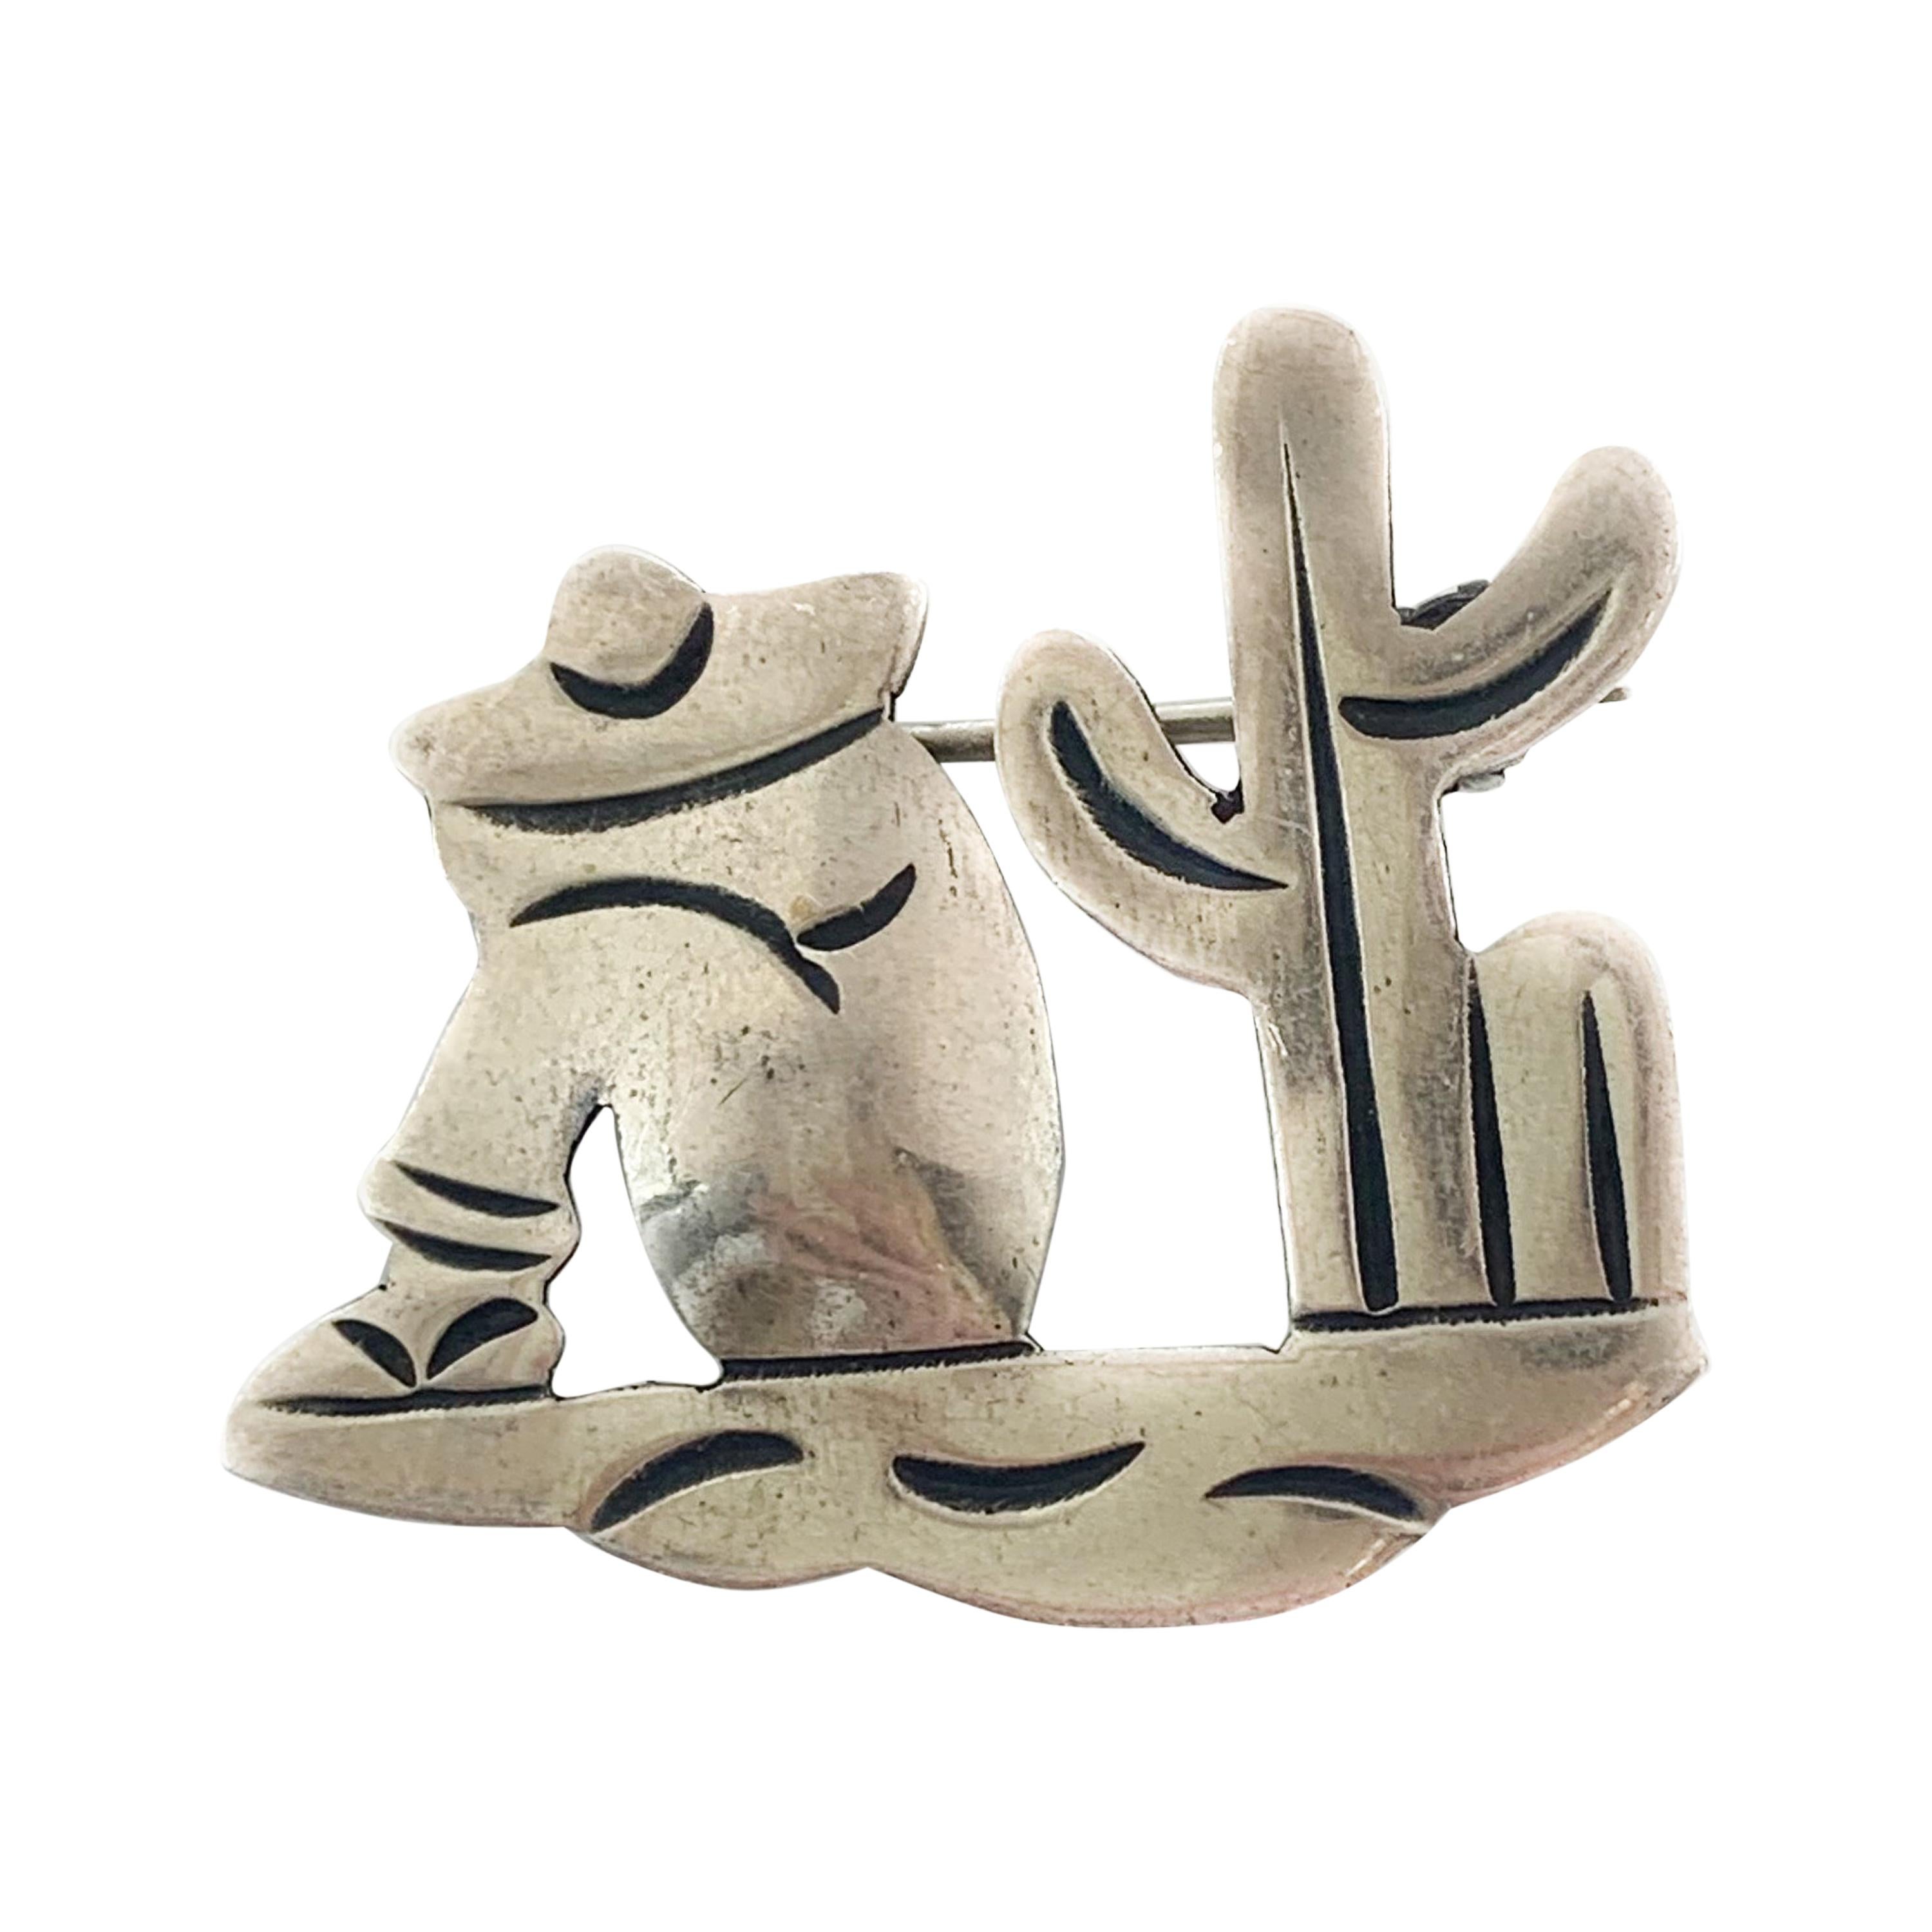 Silberbrosche für sitzenden Wüstenmann im Vintage-Stil, einzigartig